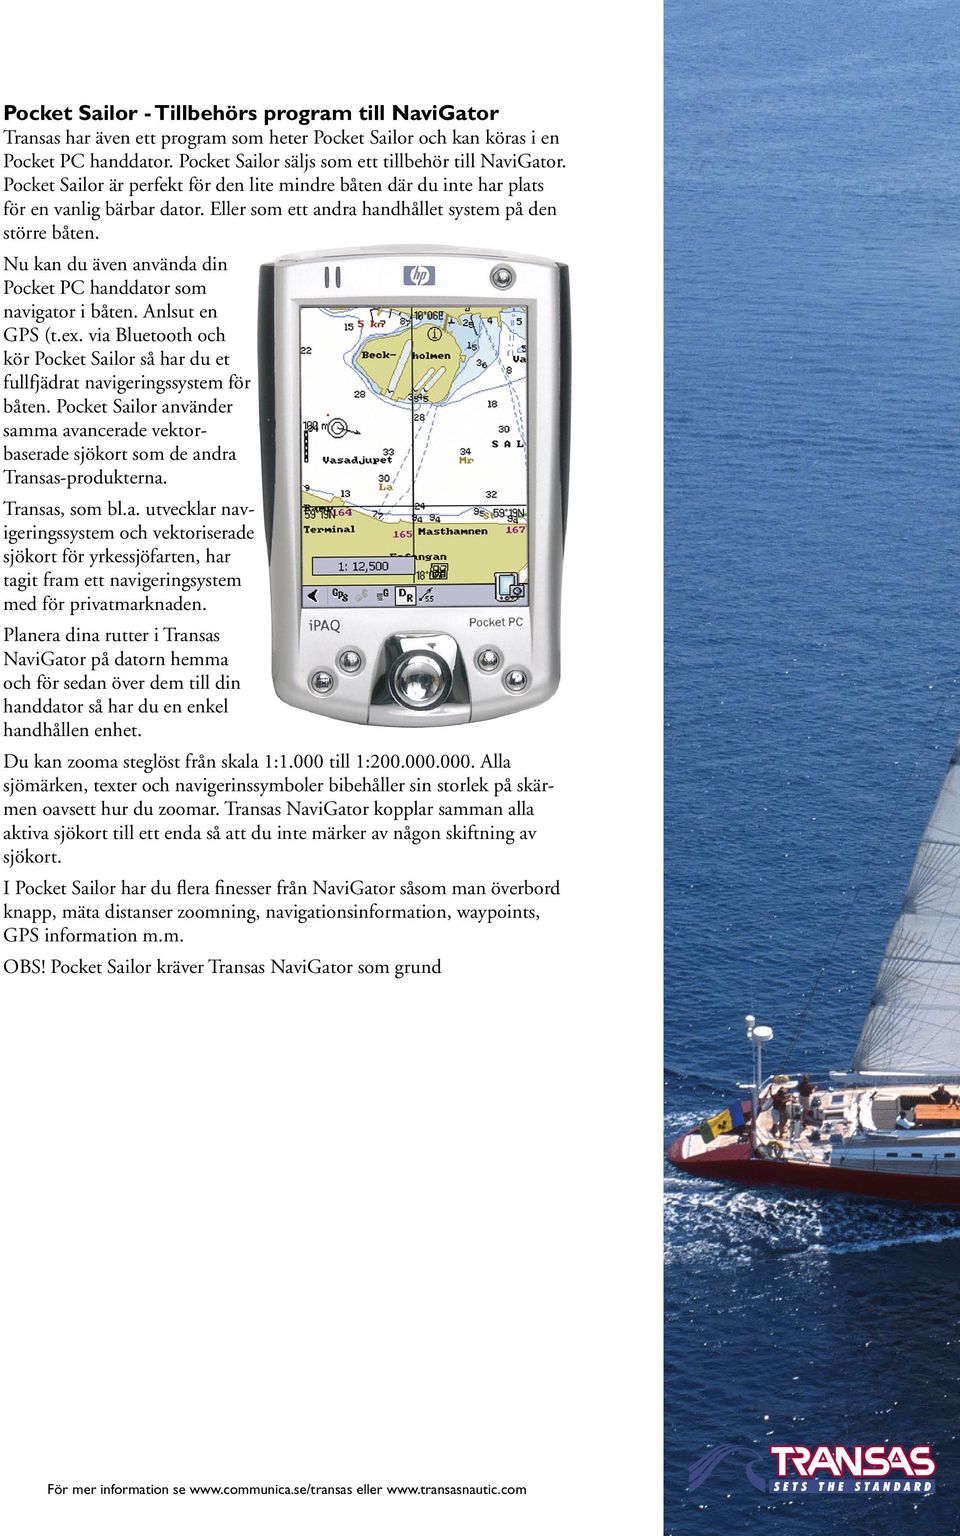 Nu kan du även använda din Pocket PC handdator som navigator i båten. Anlsut en GPS (t.ex. via Bluetooth och kör Pocket Sailor så har du et fullfjädrat navigeringssystem för båten.